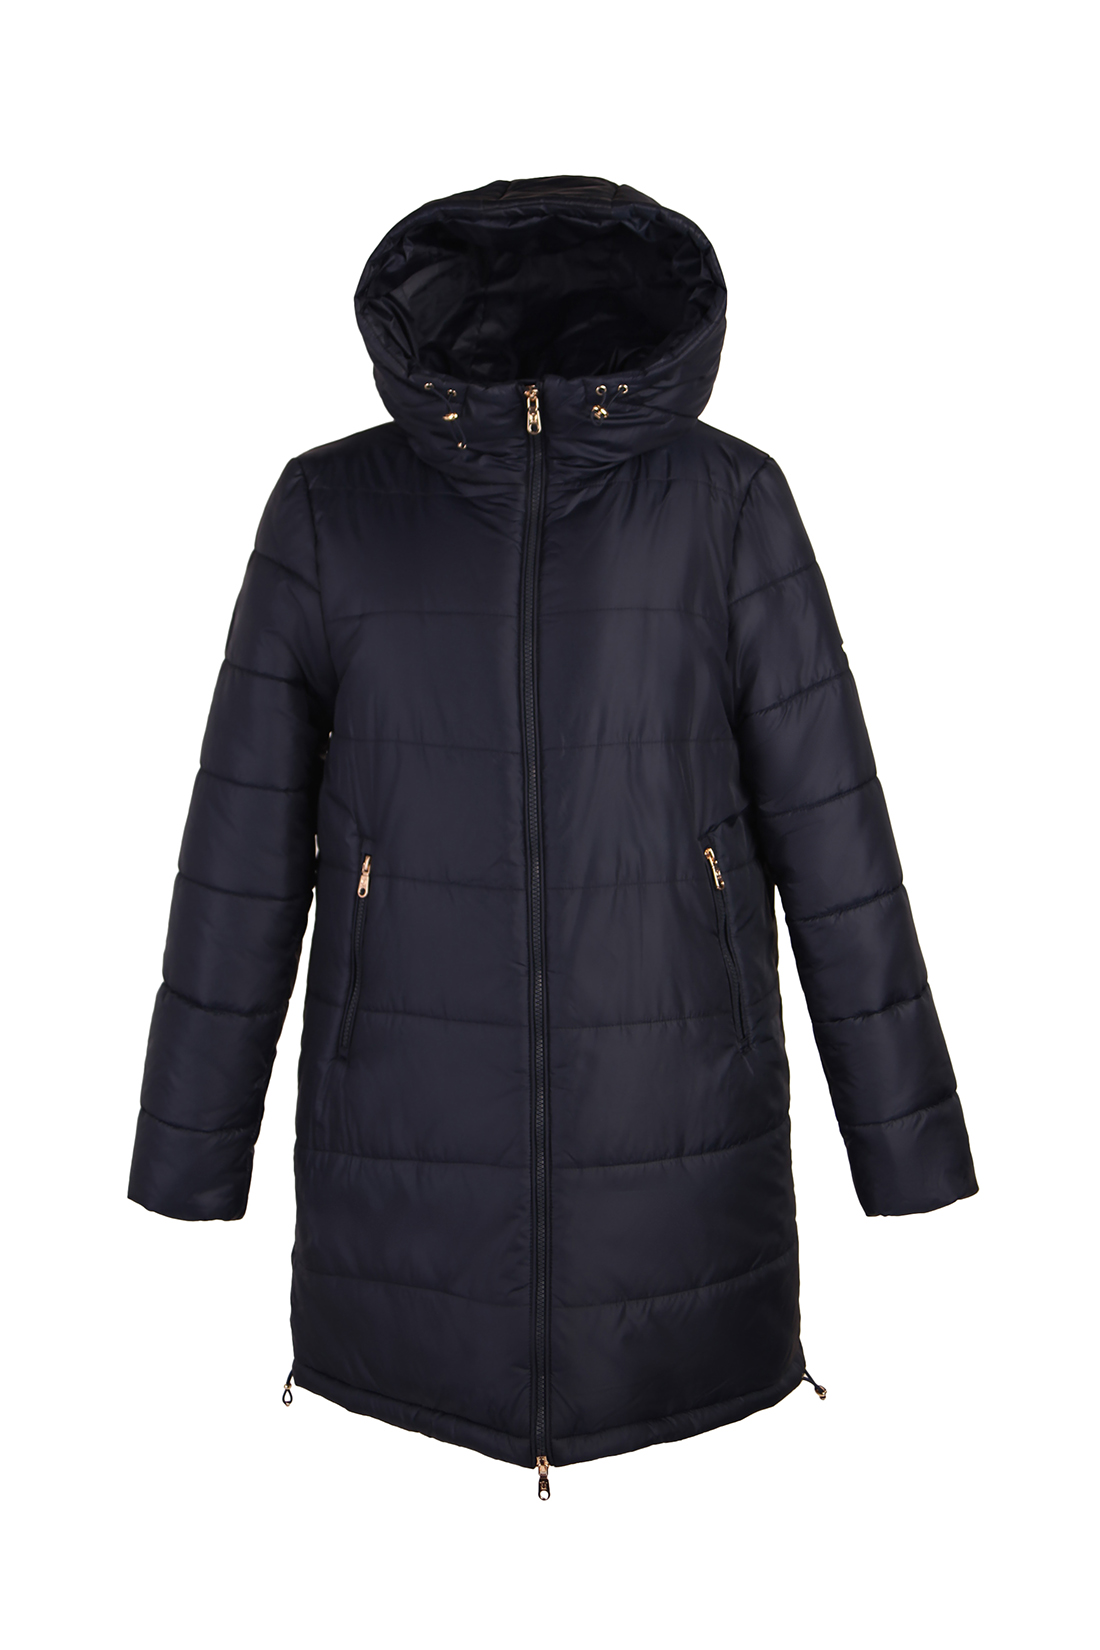 фото Утепленное пальто женское baon b031701 синее xl